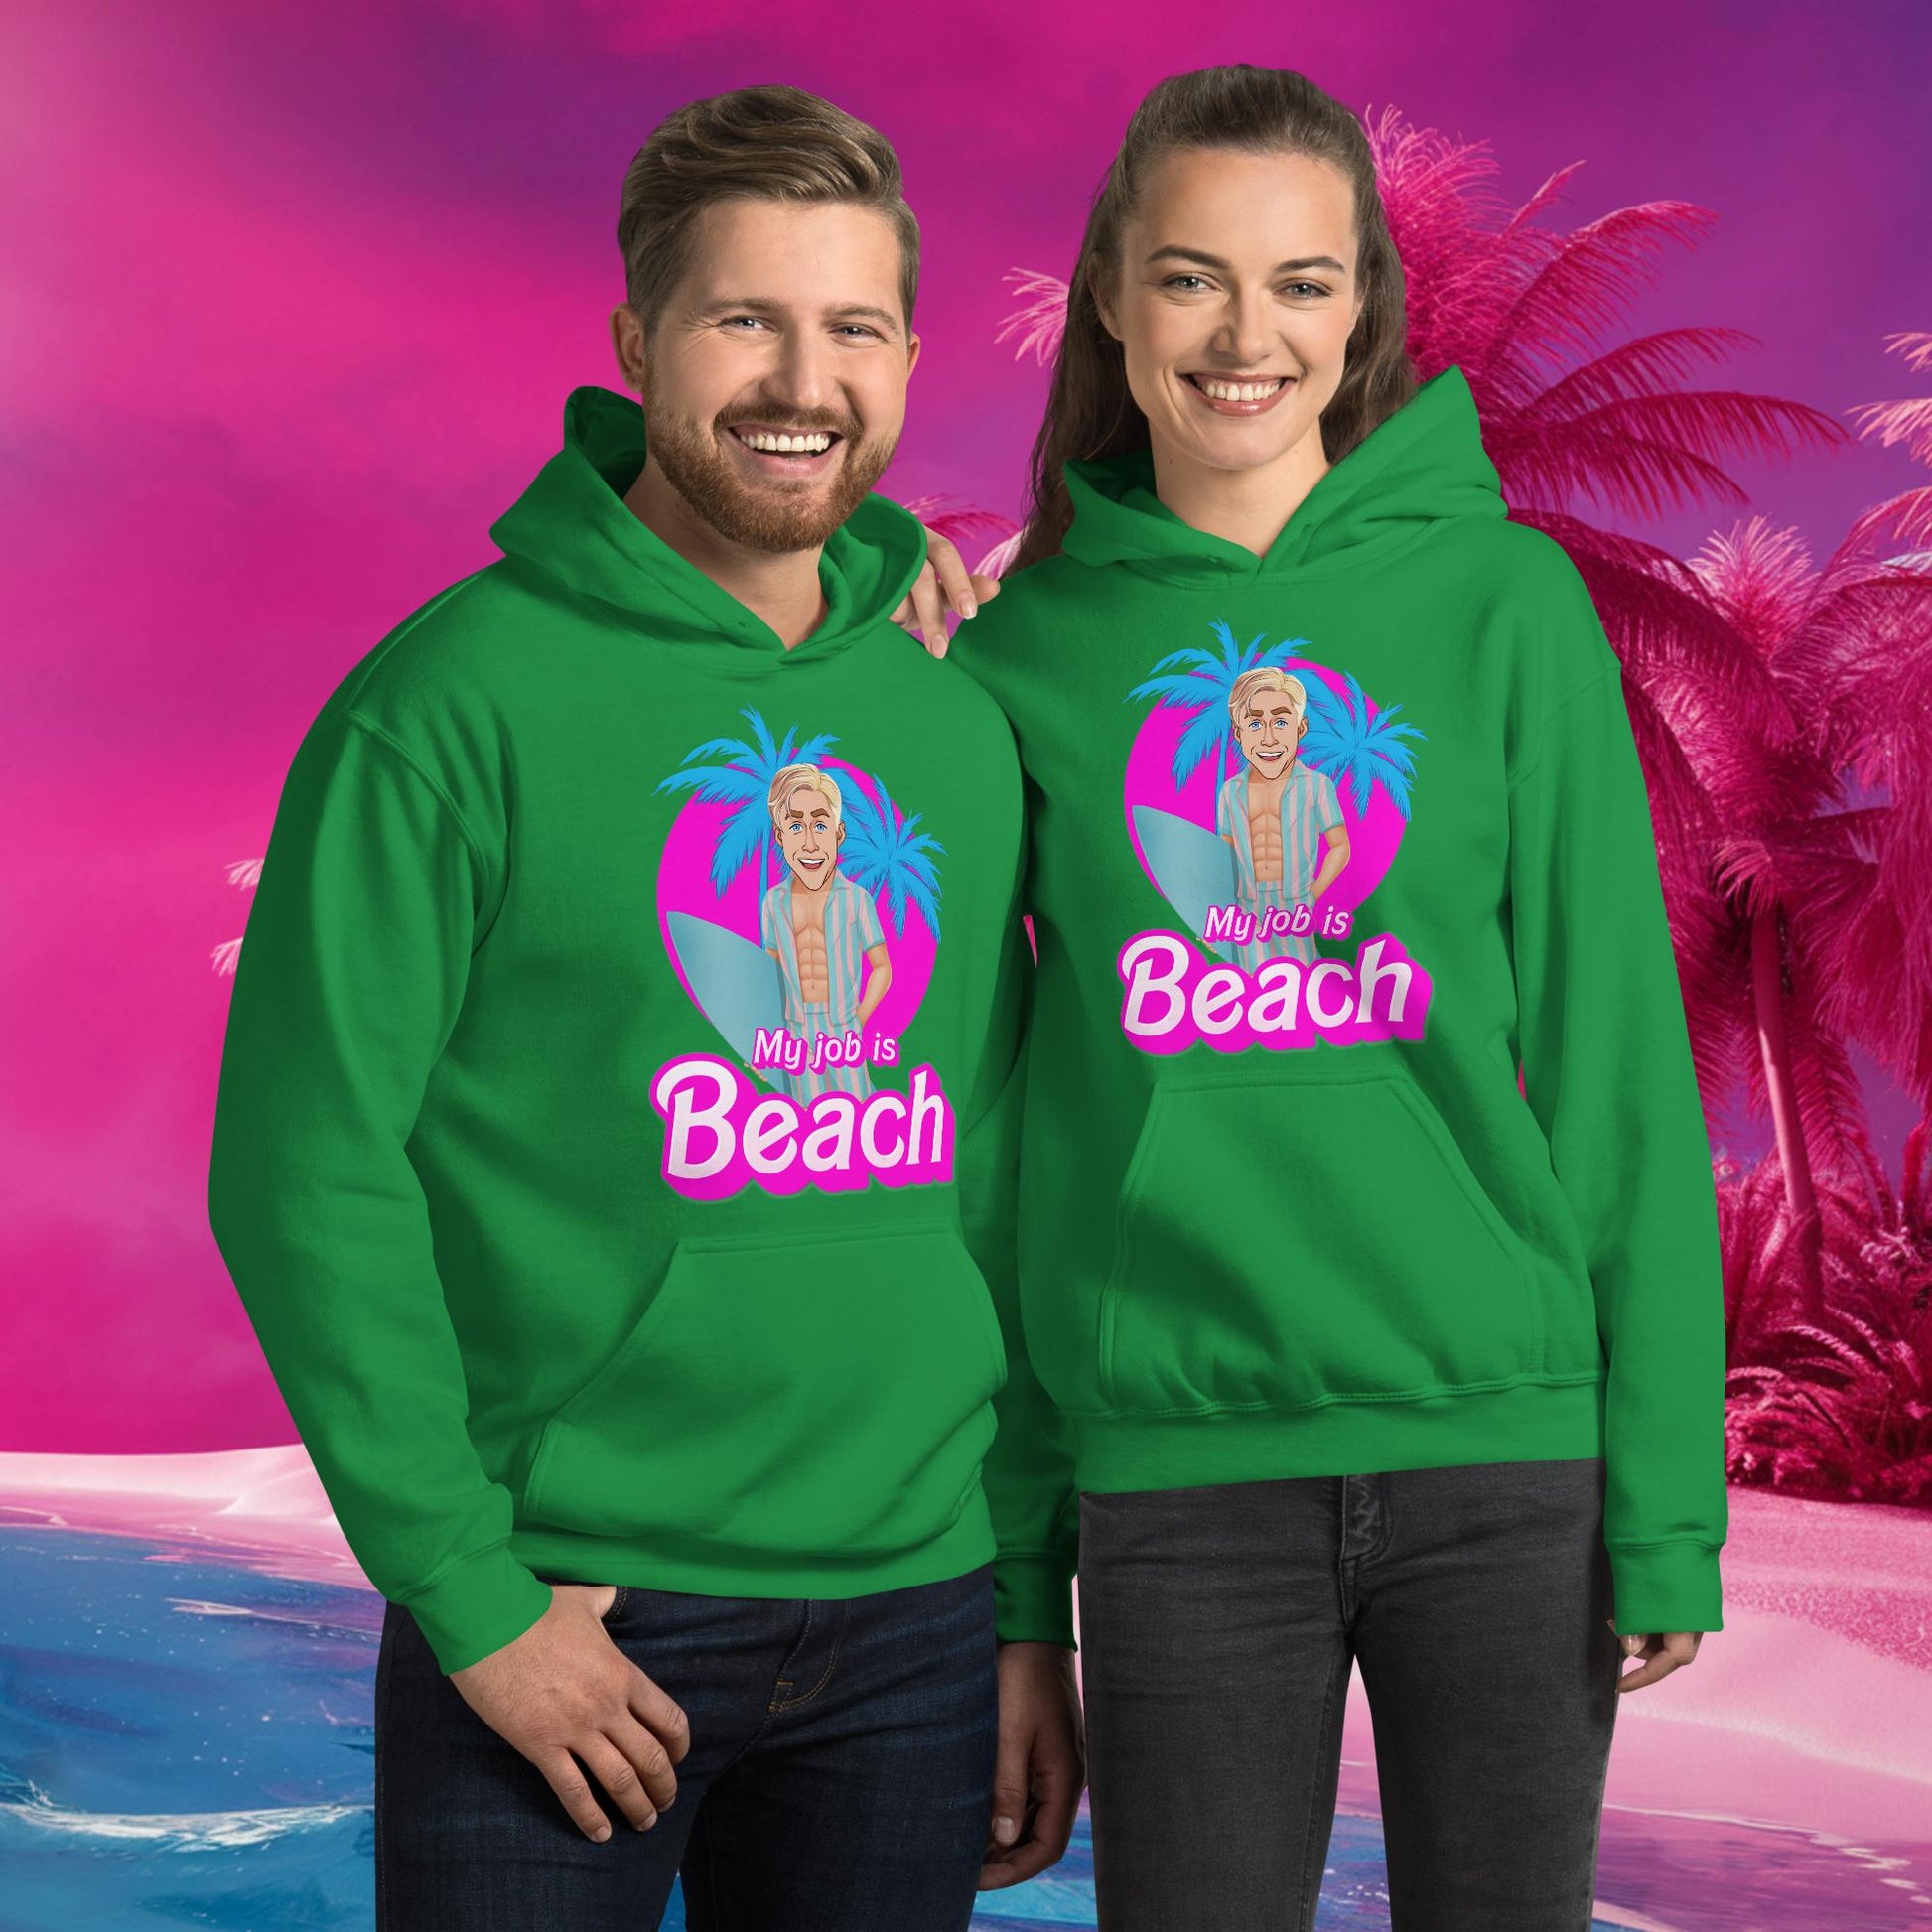 My Job is Beach Ken Barbie Movie Ryan Gosling Unisex Hoodie Next Cult Brand